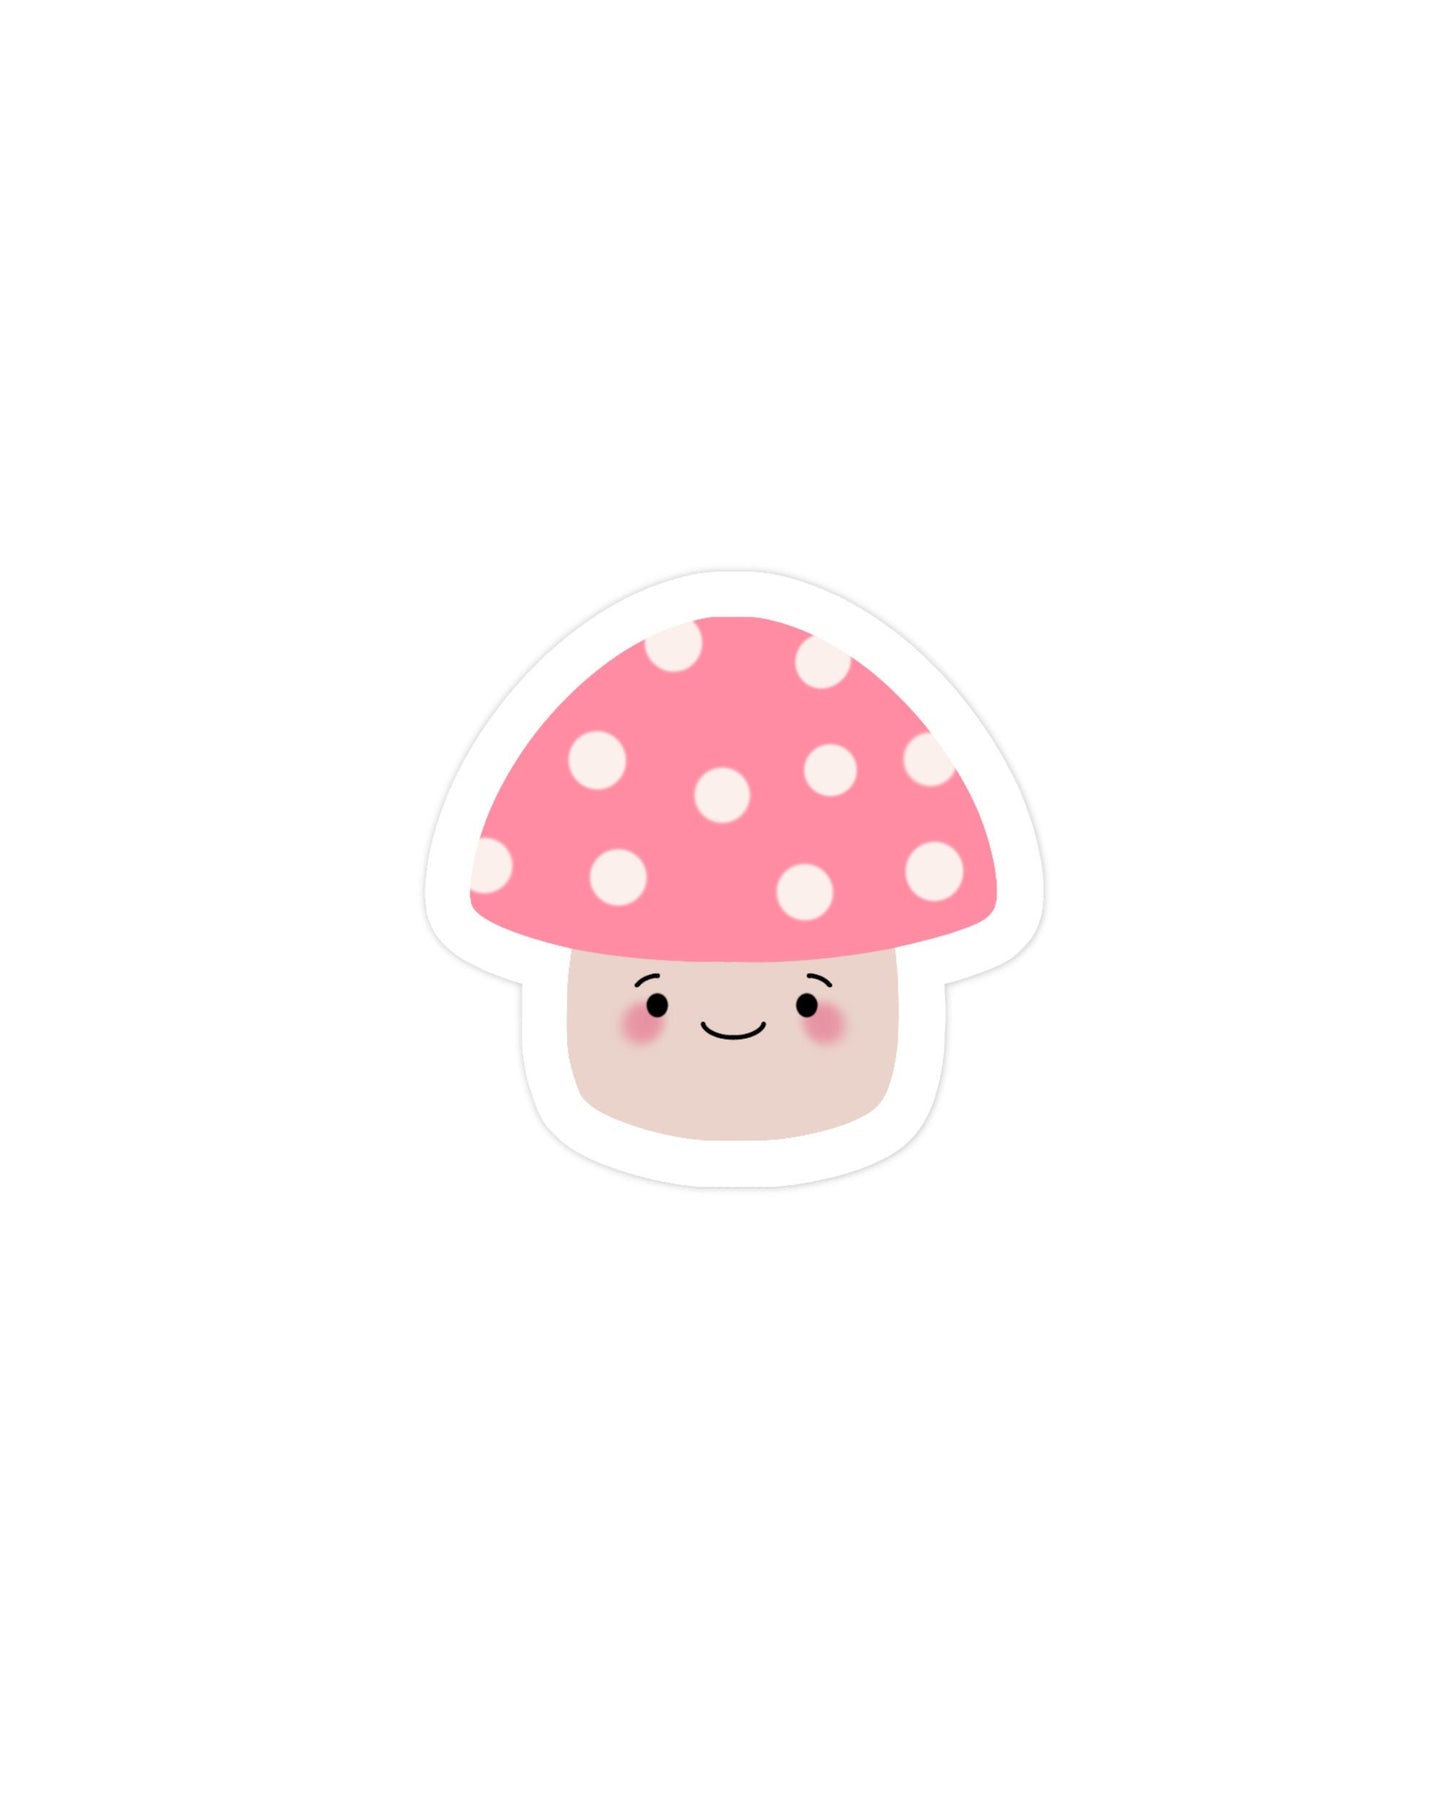 Cute kawaii mushroom sticker